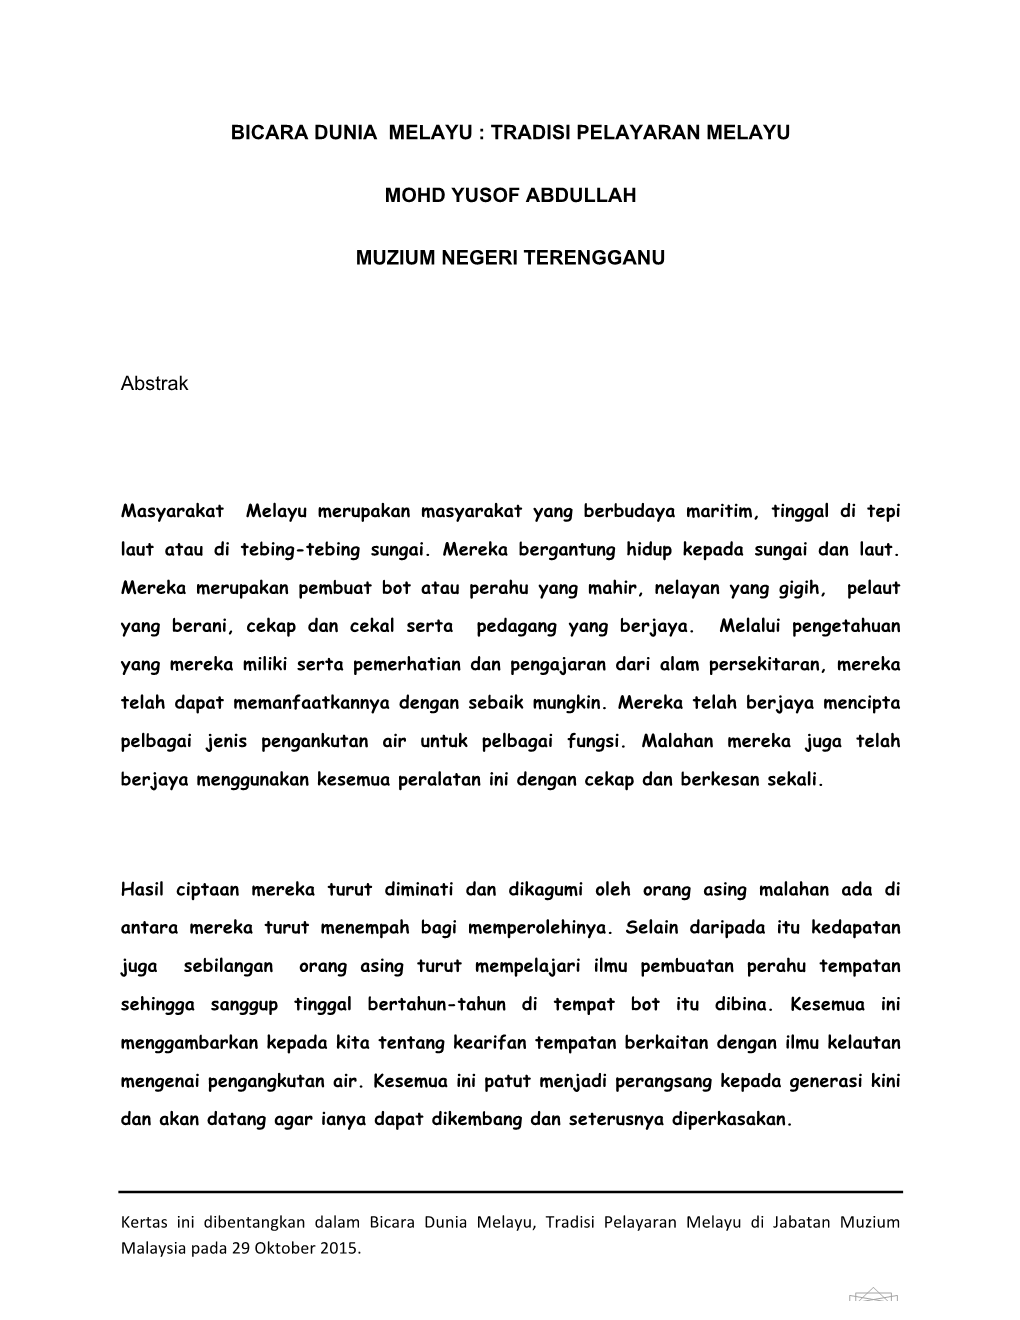 Tradisi Pelayaran Melayu Mohd Yusof Abdullah